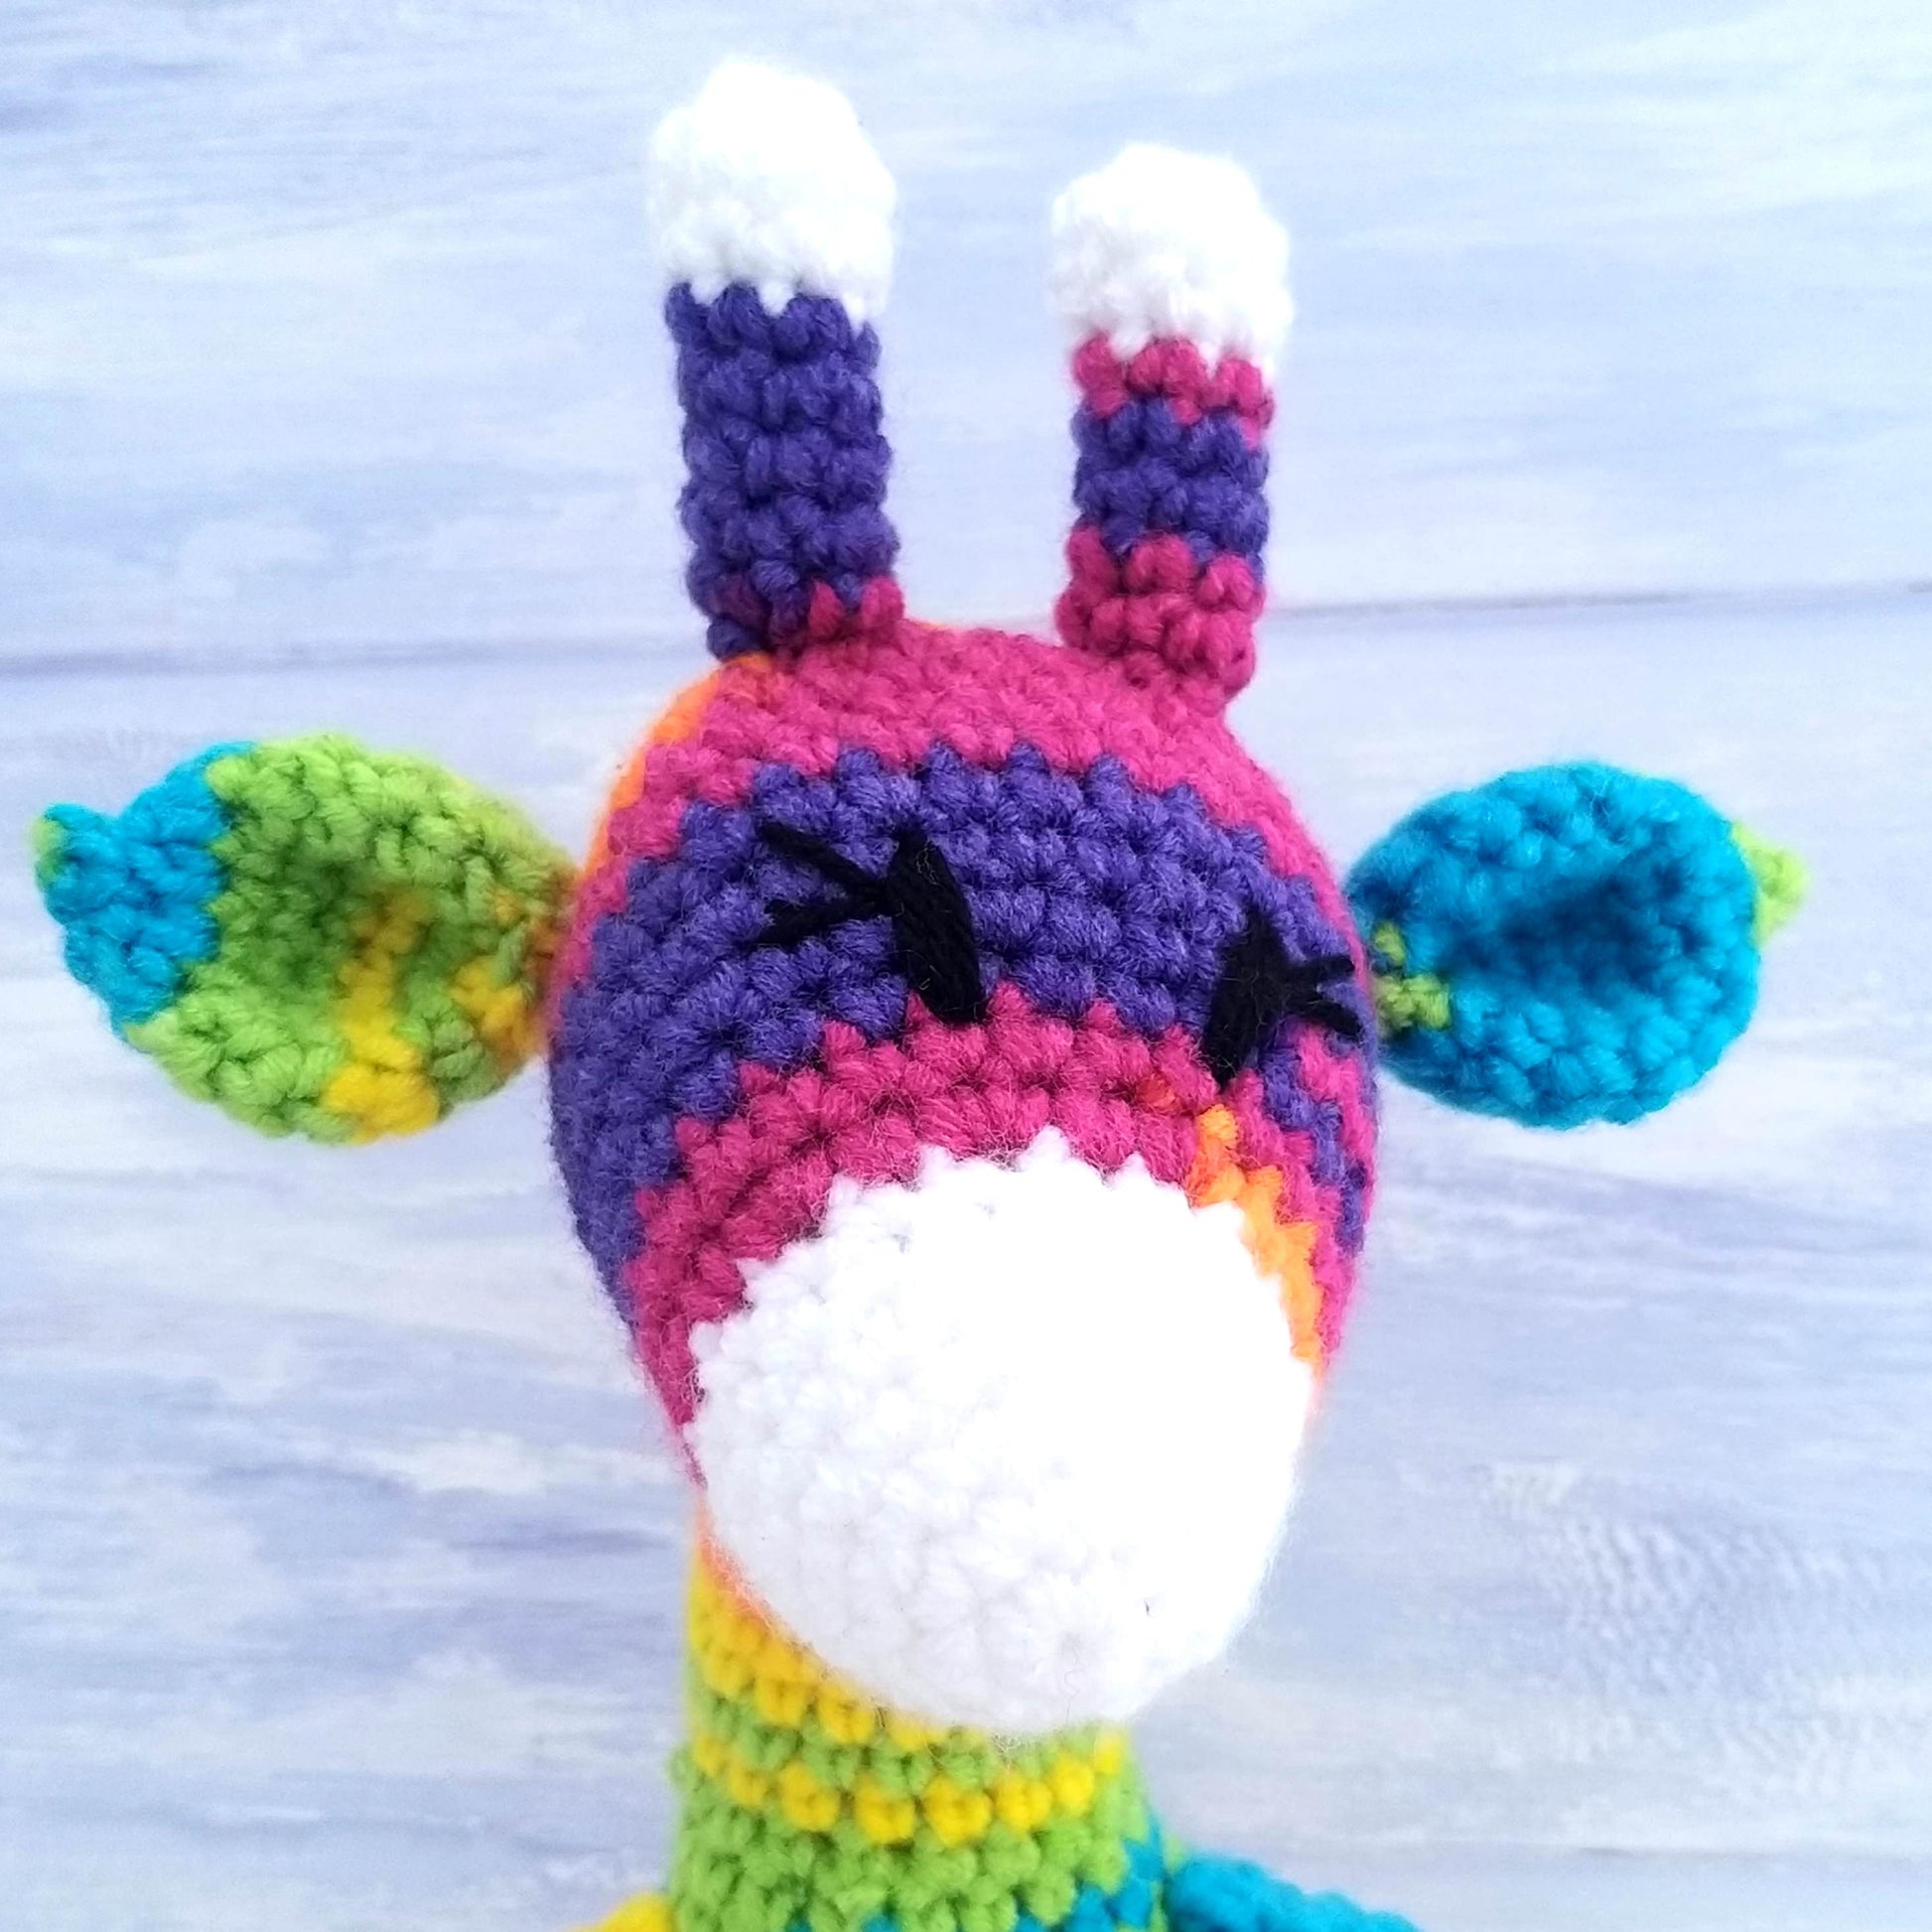 Beginner Crochet Kit - Giraffe Crochet Kit for Beginners